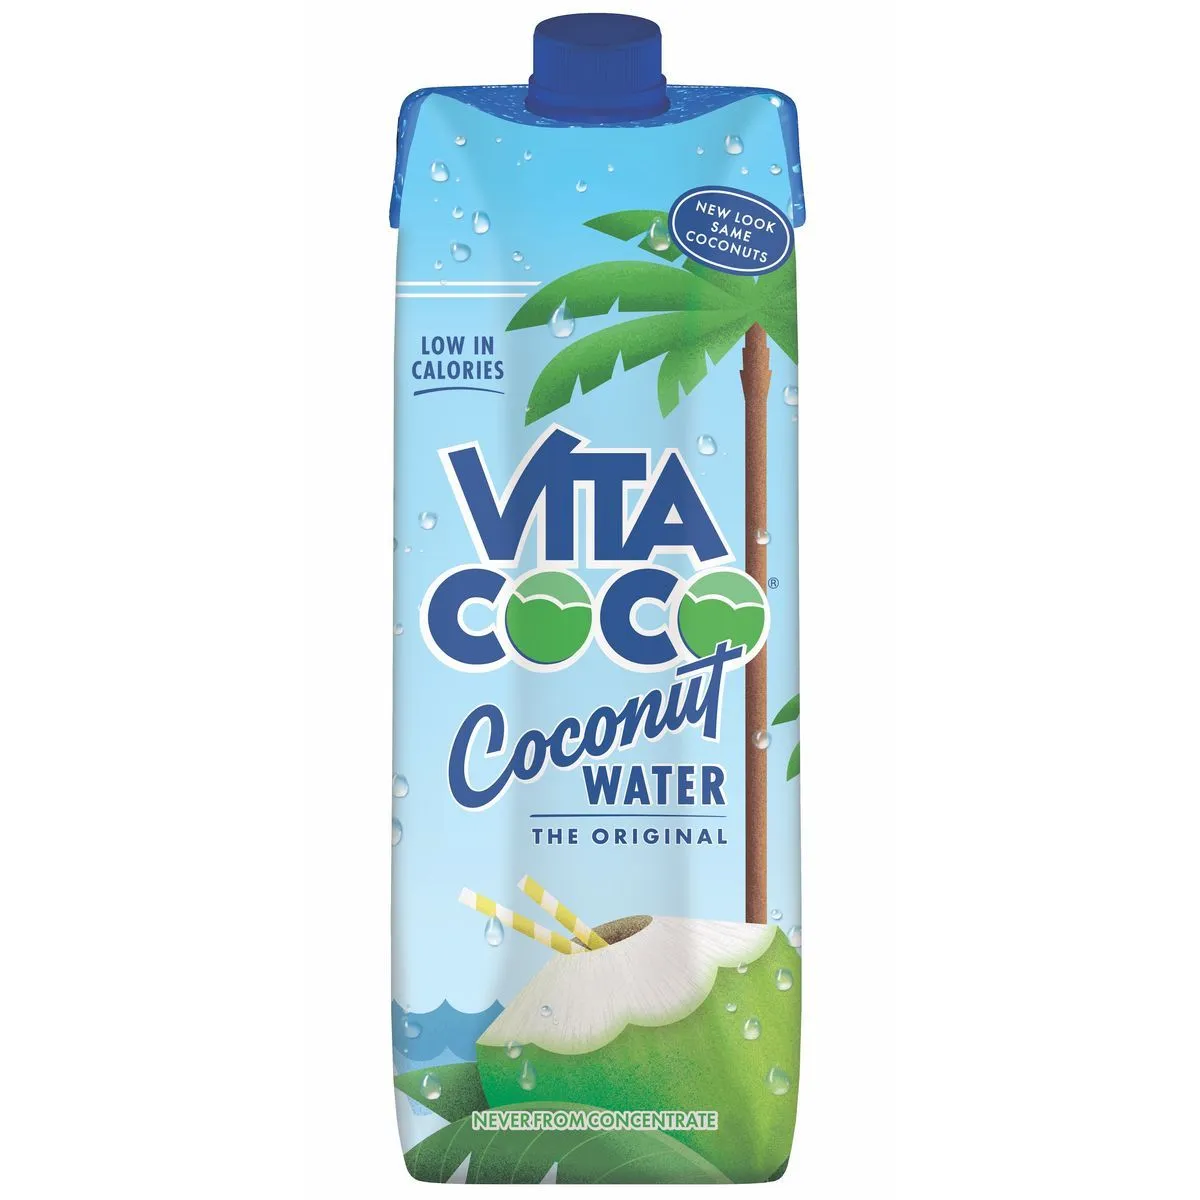  eau de coco vita coco